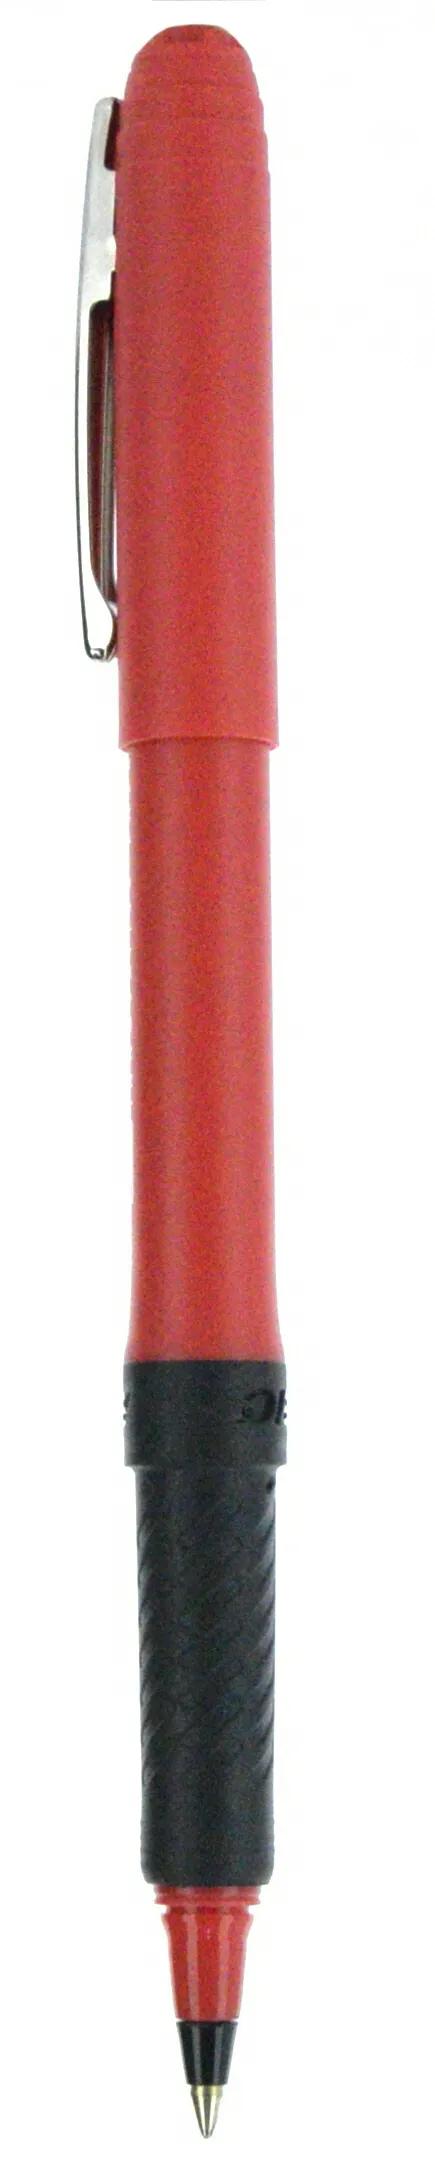 BIC® Grip Roller Pen 83 of 147